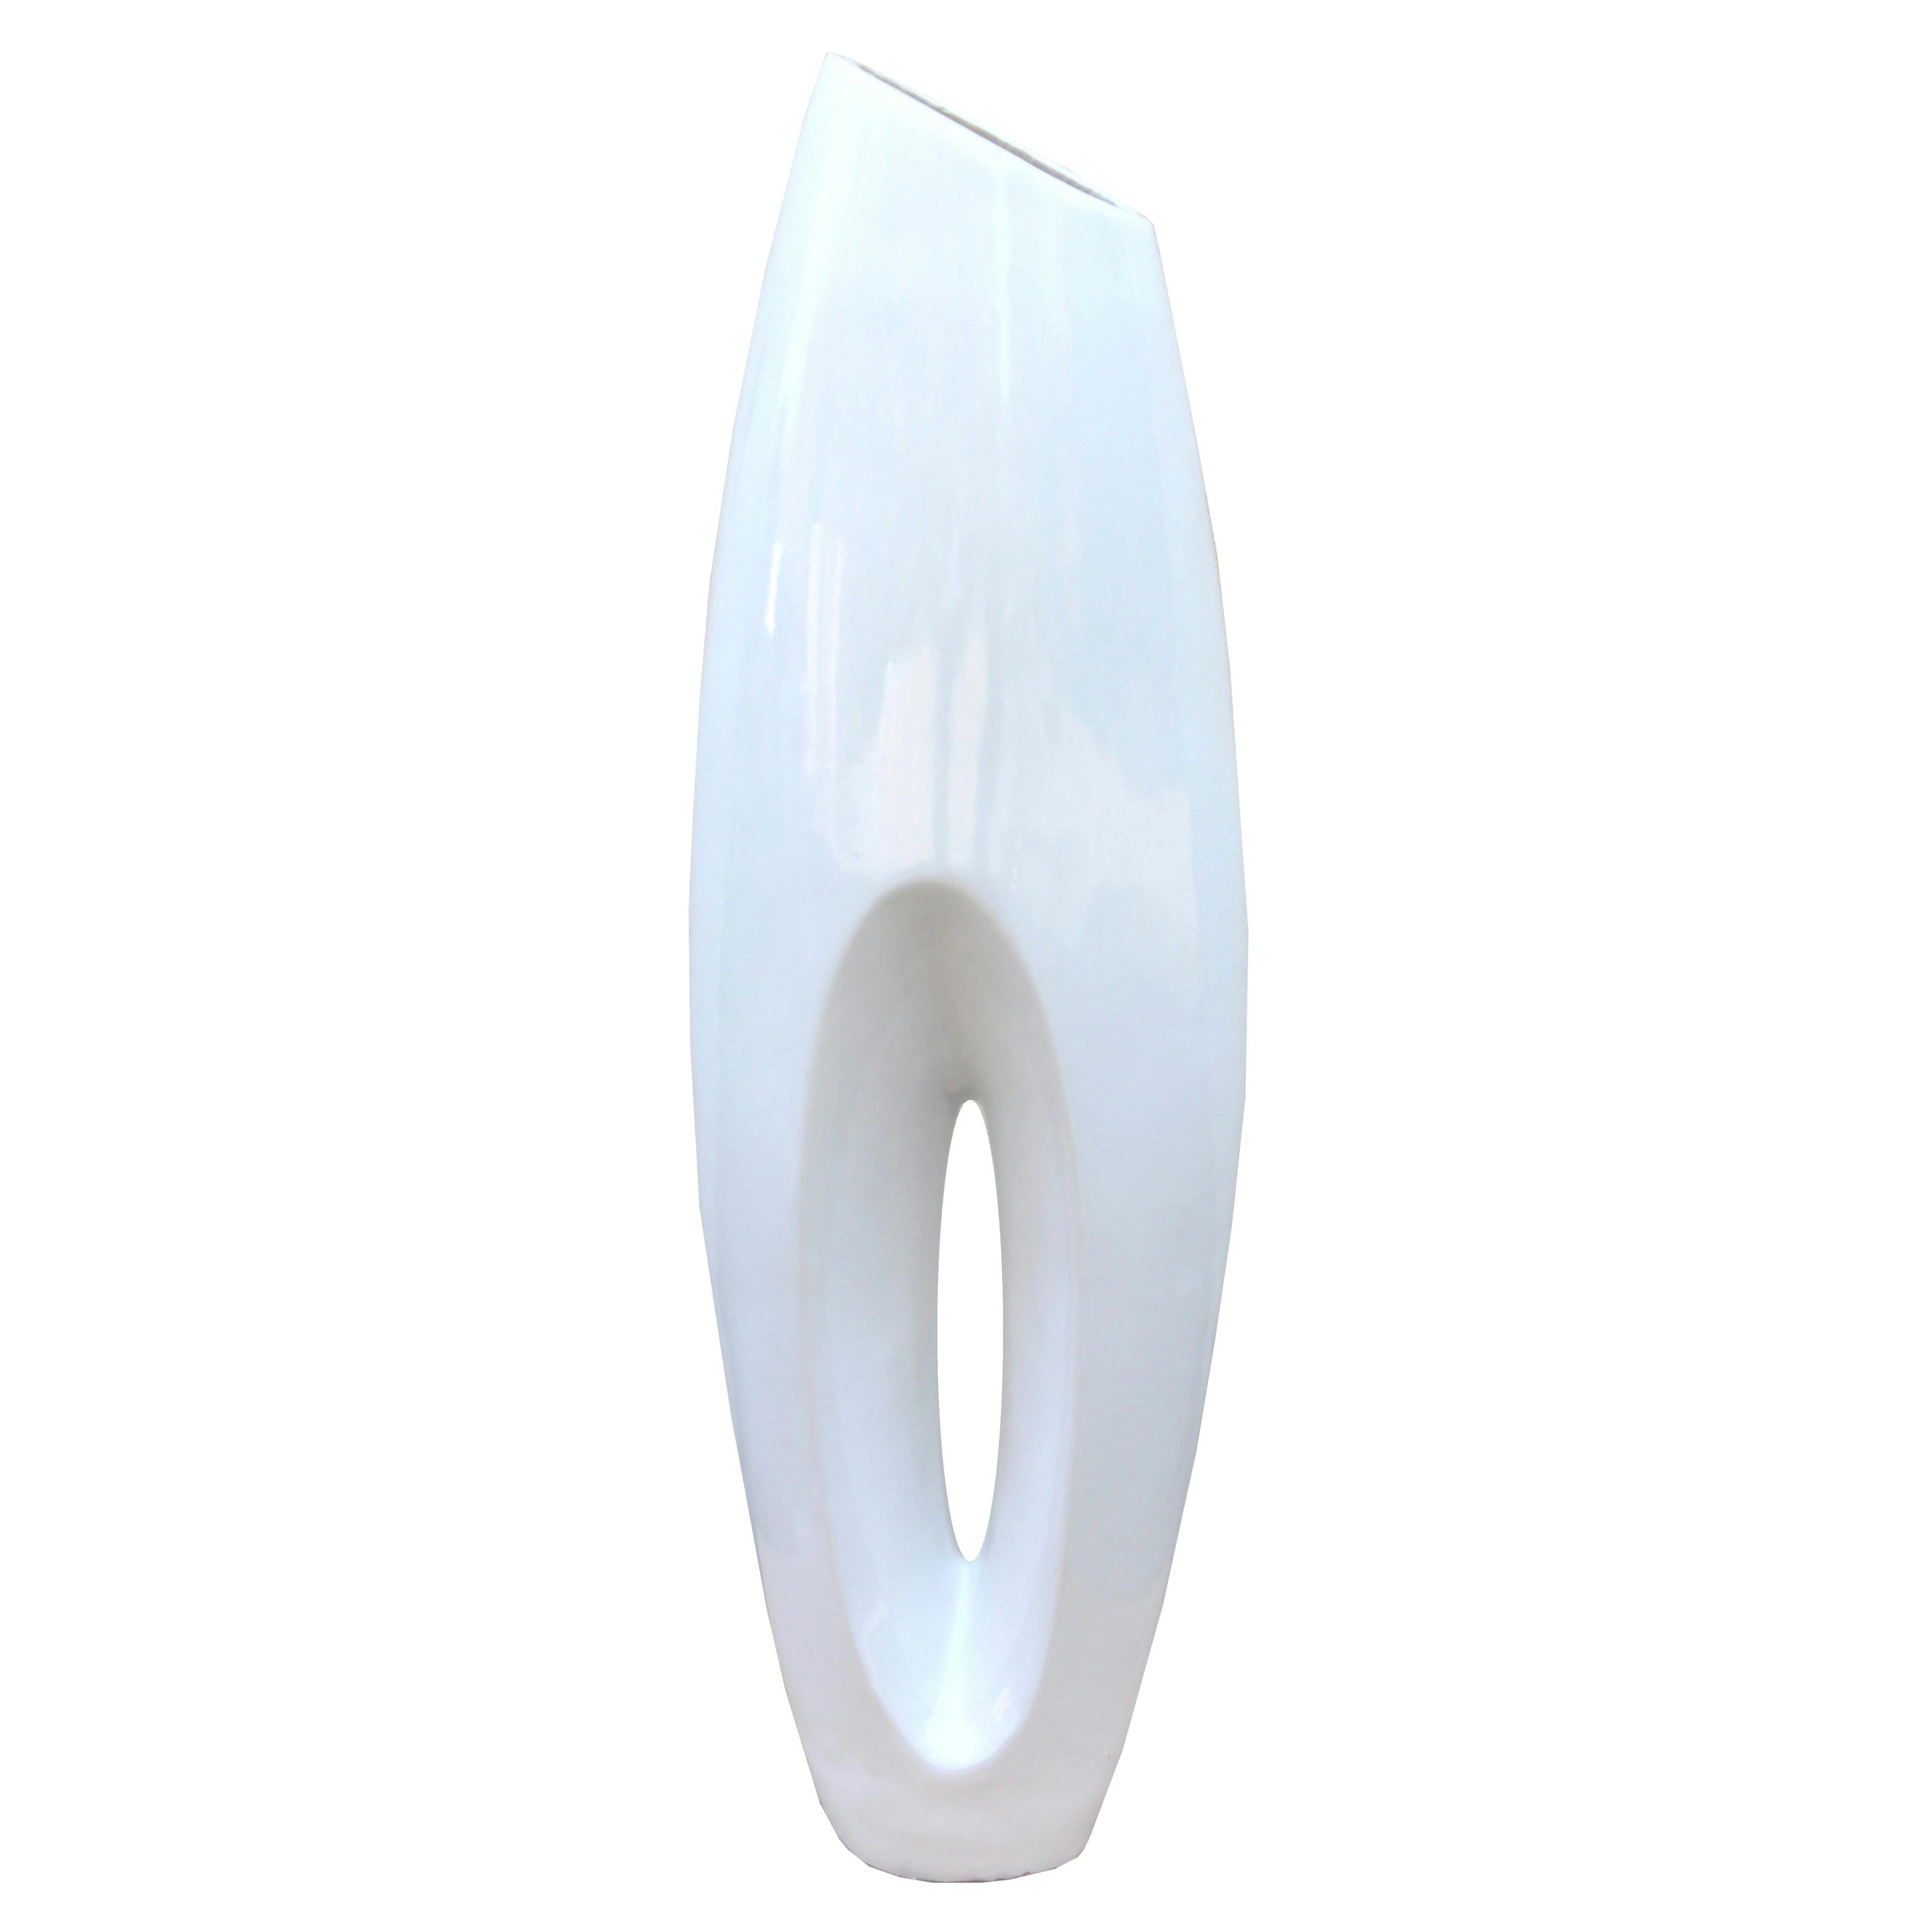 Elegant White Magnesium Oxide 40-inch Decorative Floor Vase